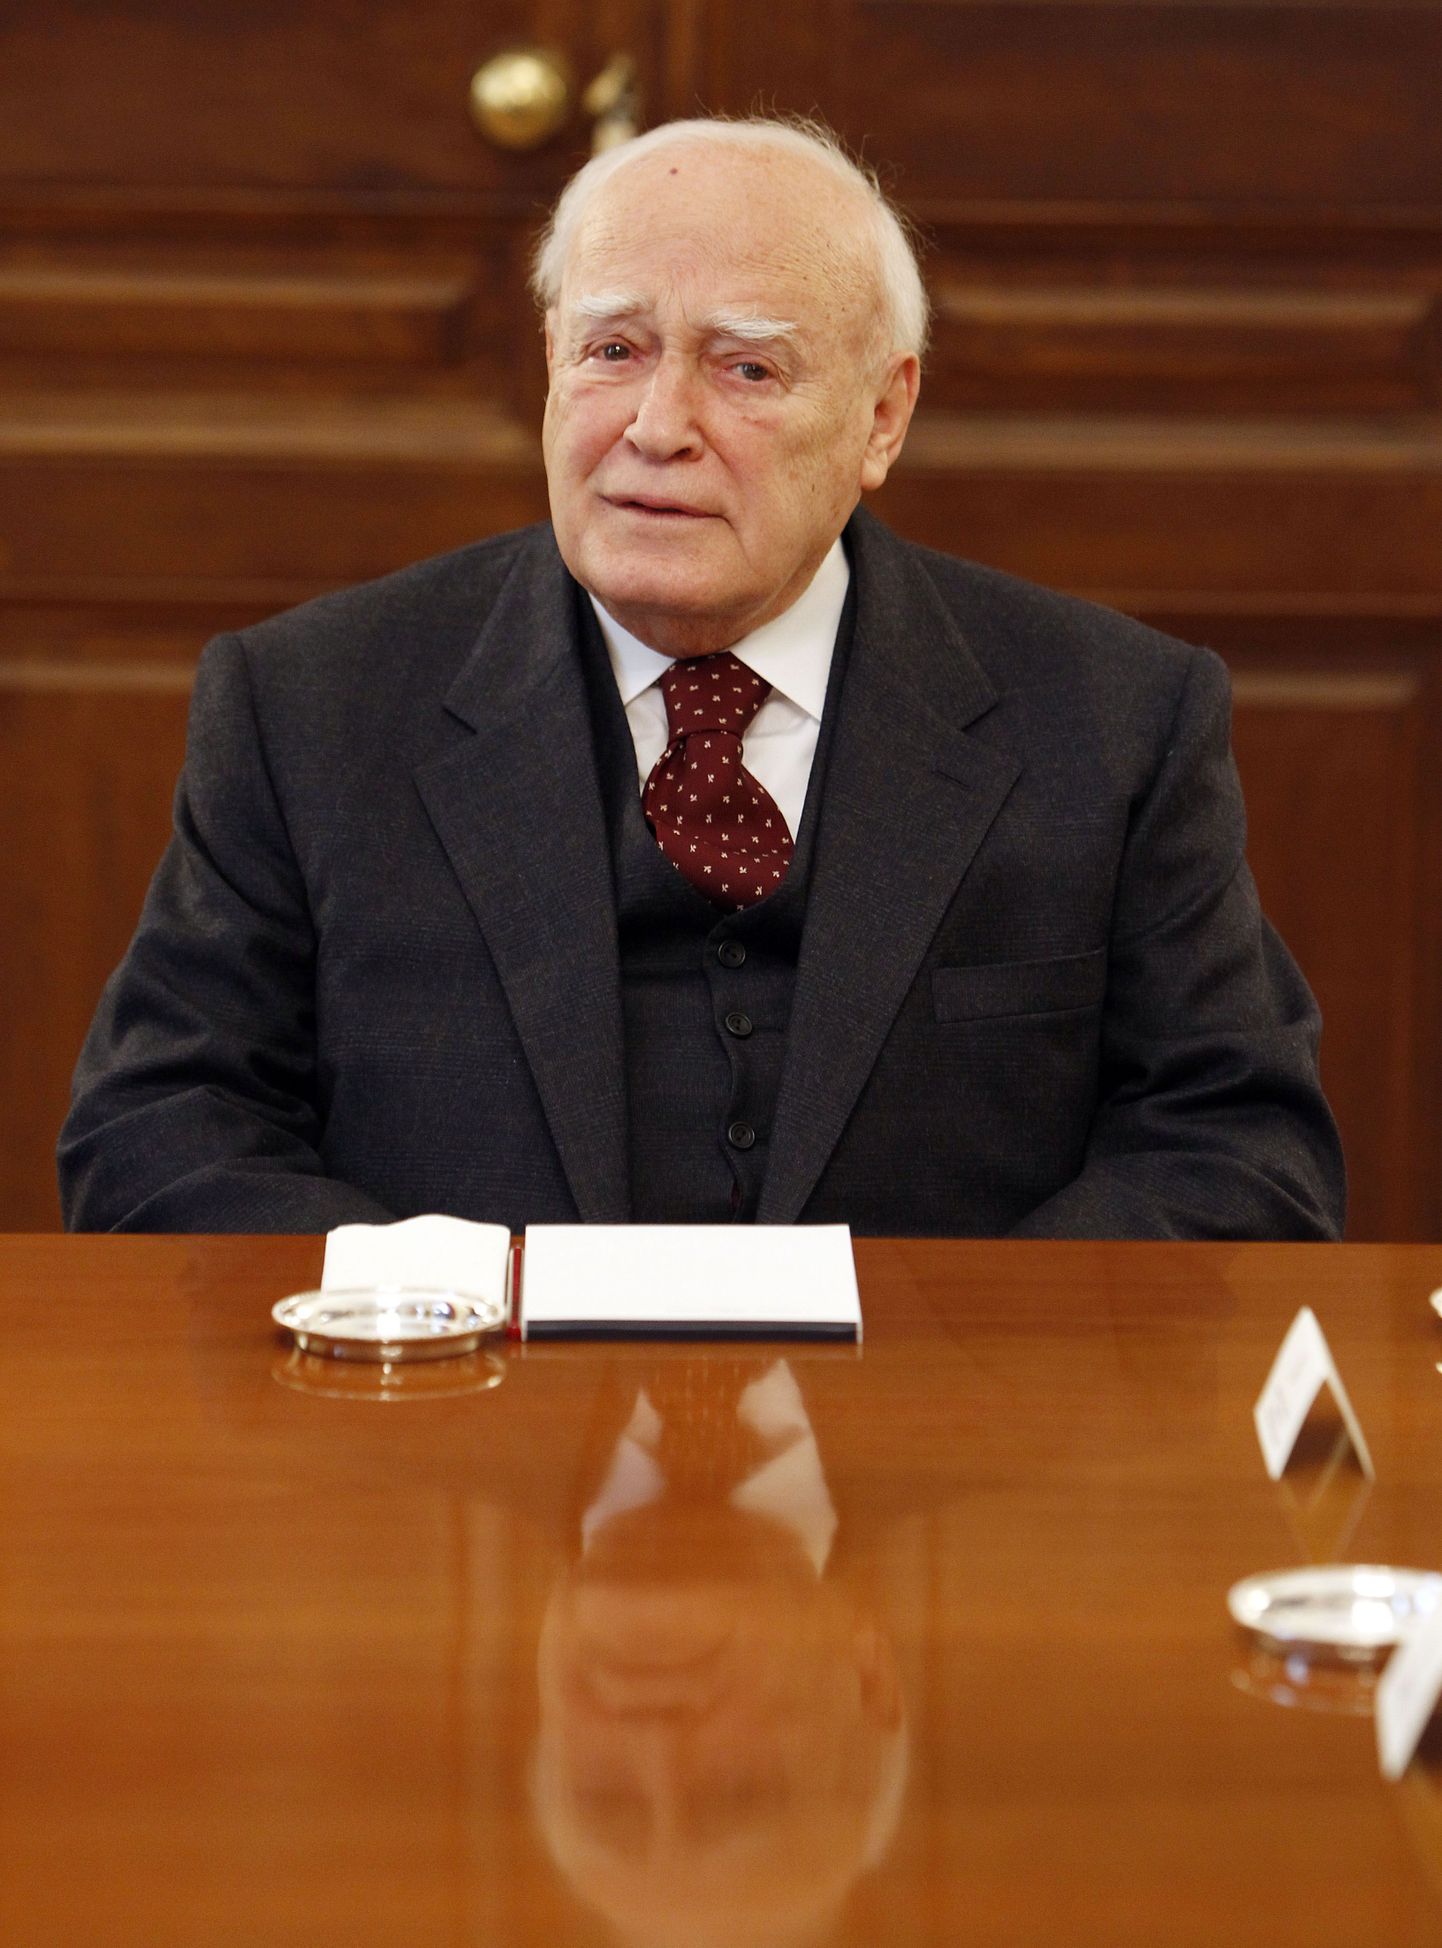 Kreeka president Karolos Papoulias